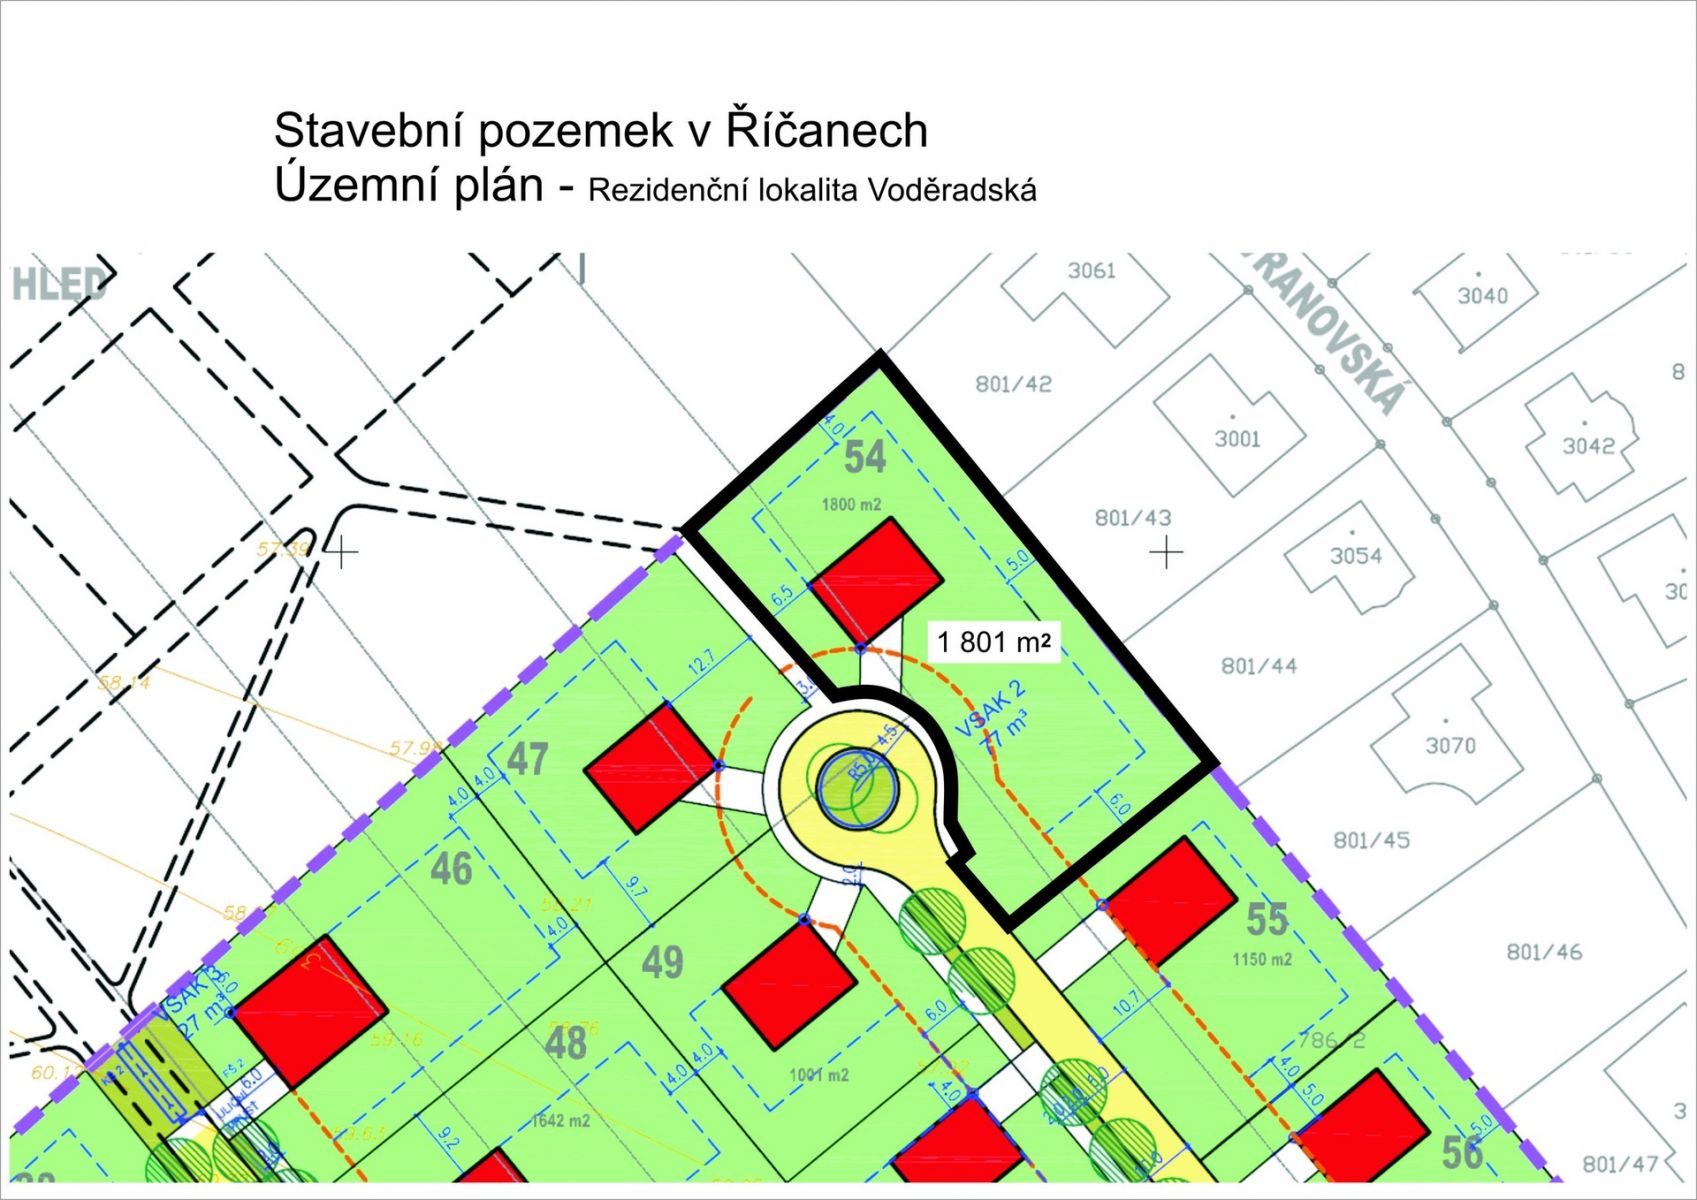 Exklusivní stavební pozemek pro bydlení 1 801 m2 v Říčanech u Prahy, lokalita Voděradská, obrázek č. 2